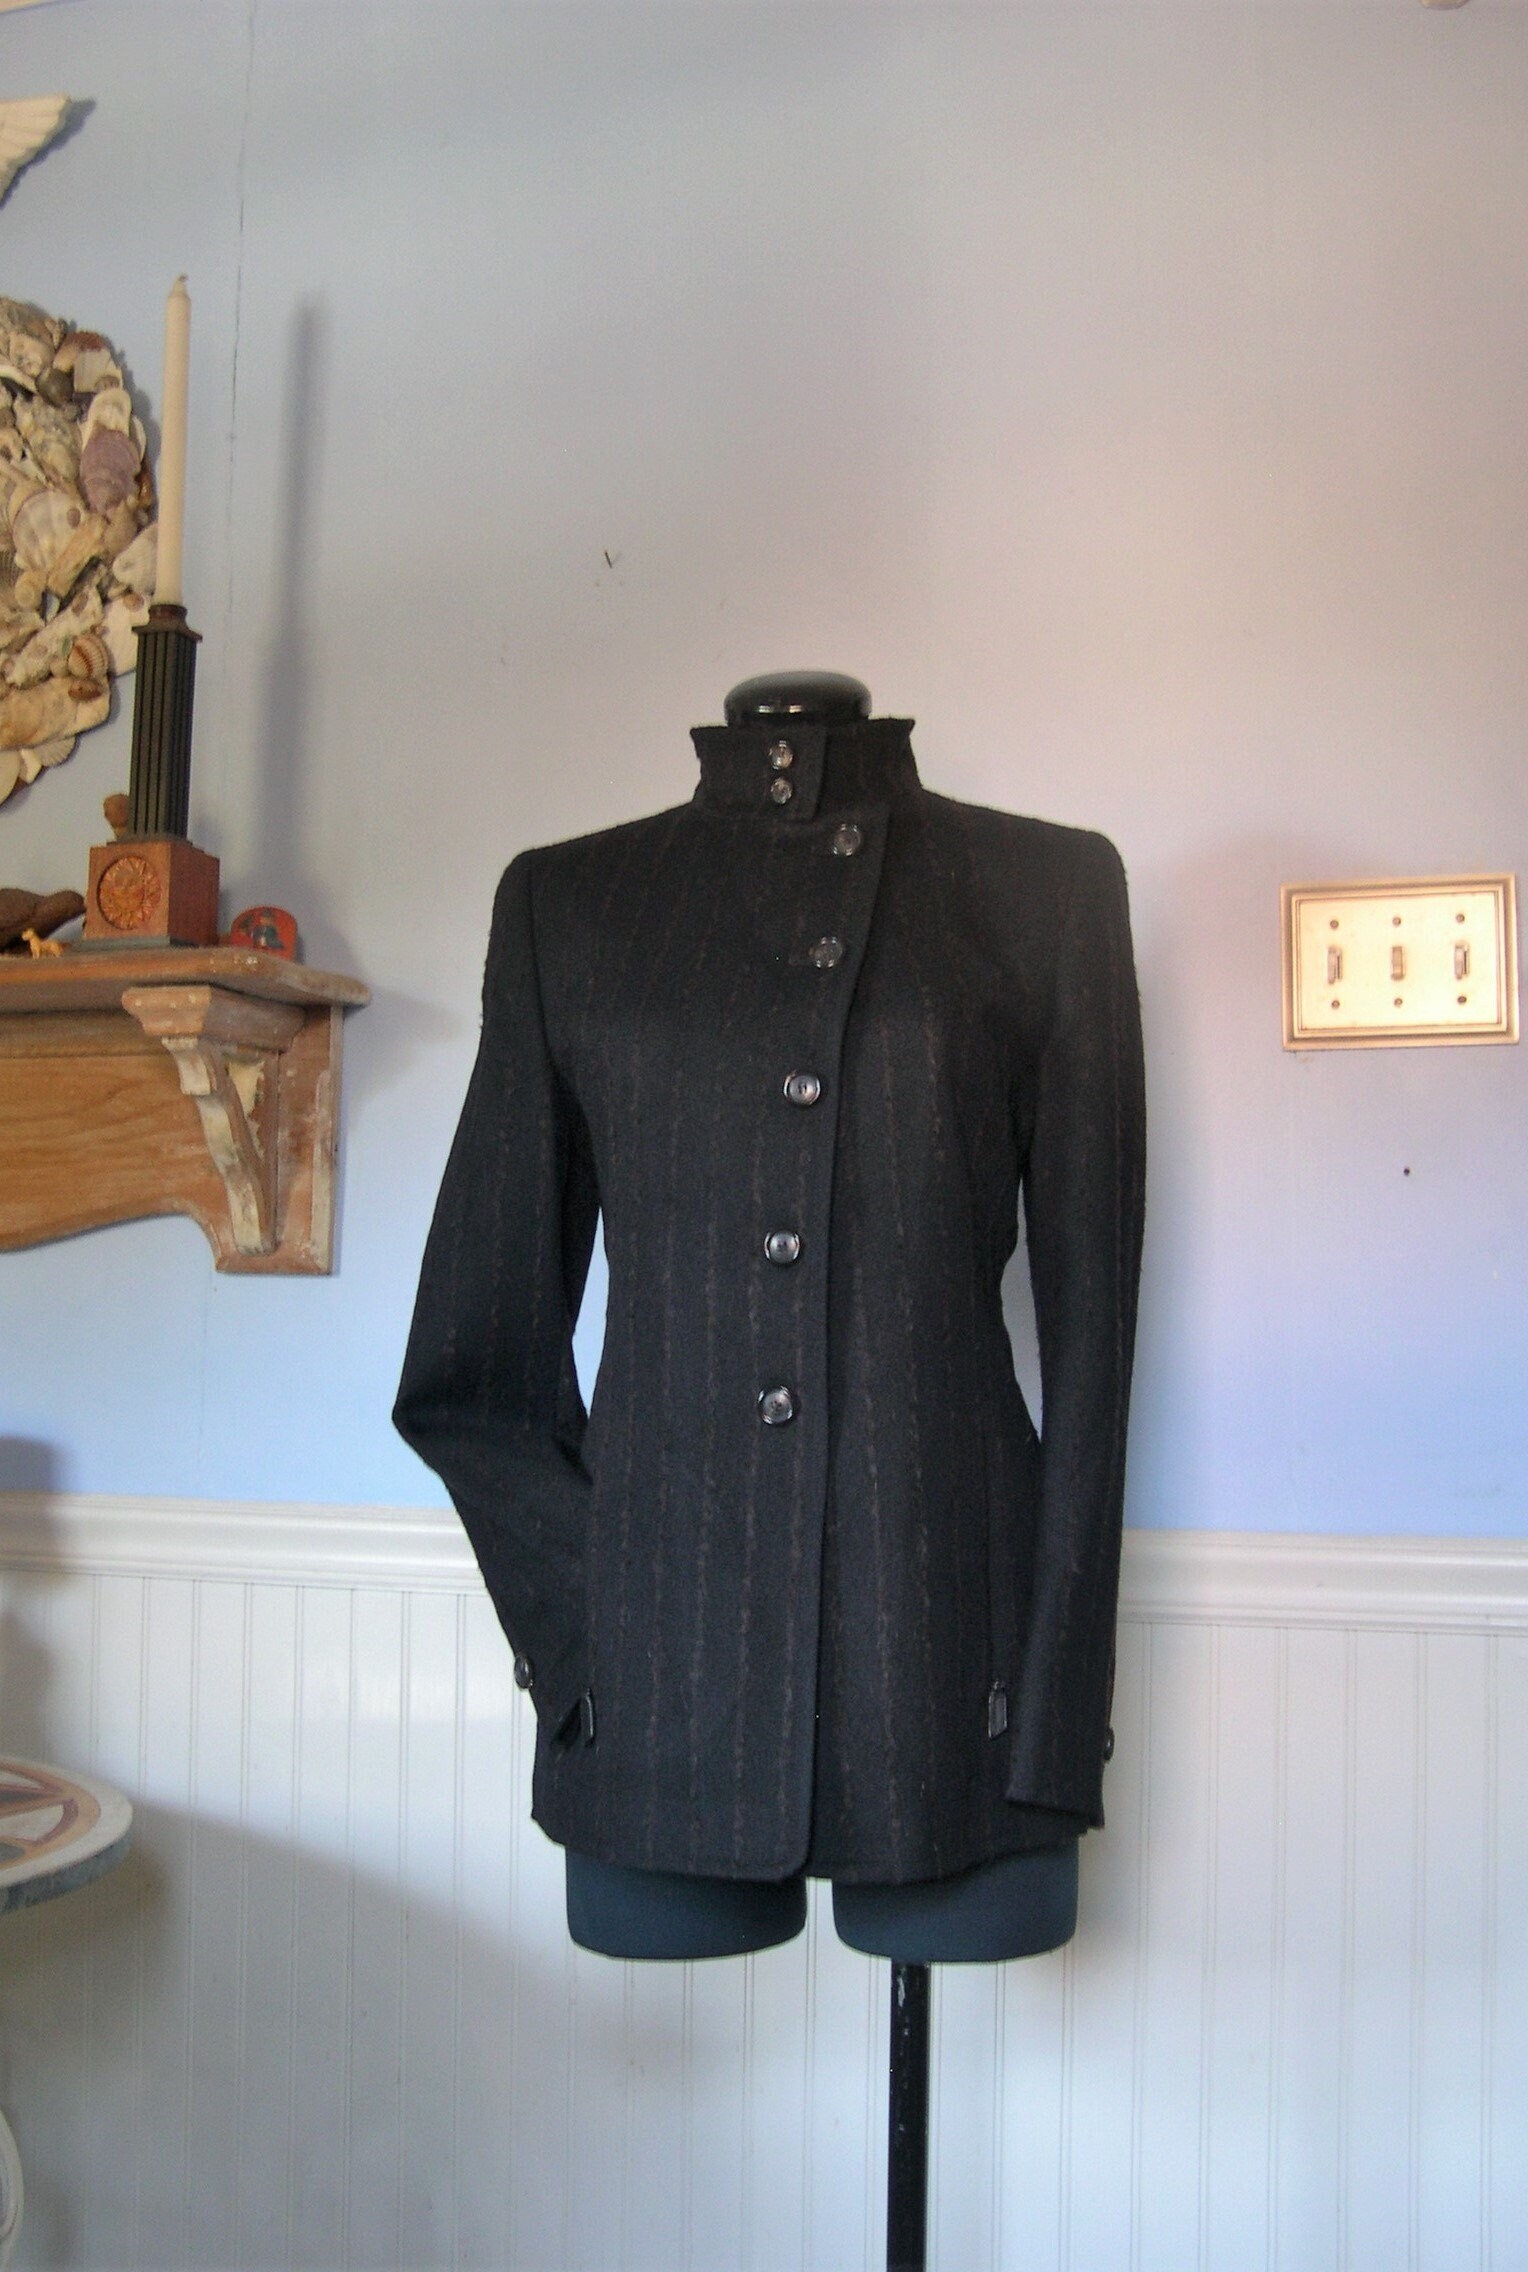 Akris Punto, Jackets & Coats, Akris Punto Tan Cotton Blazer Size M